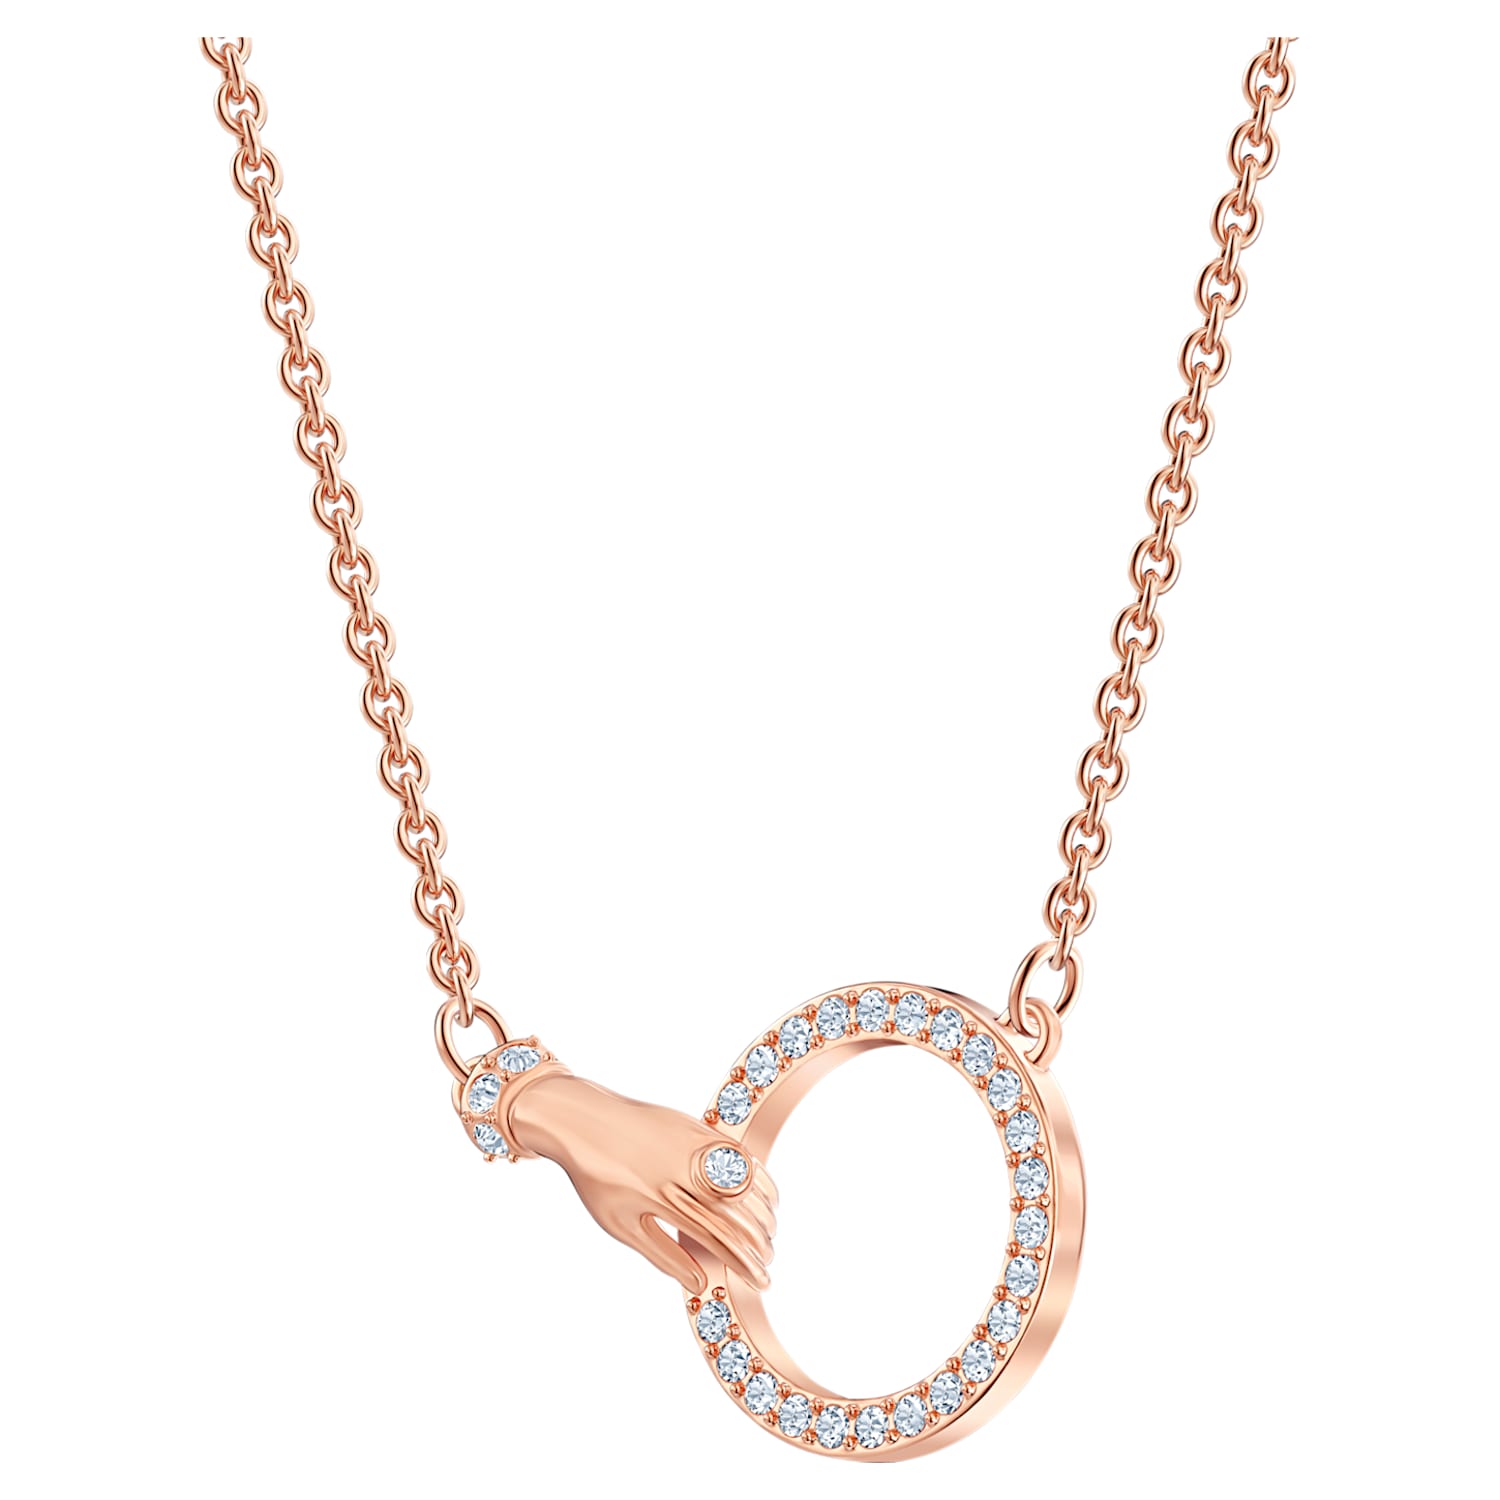 Th Afleiden Chronisch Swarovski Symbolic necklace, Hand, White, Rose gold-tone plated | Swarovski